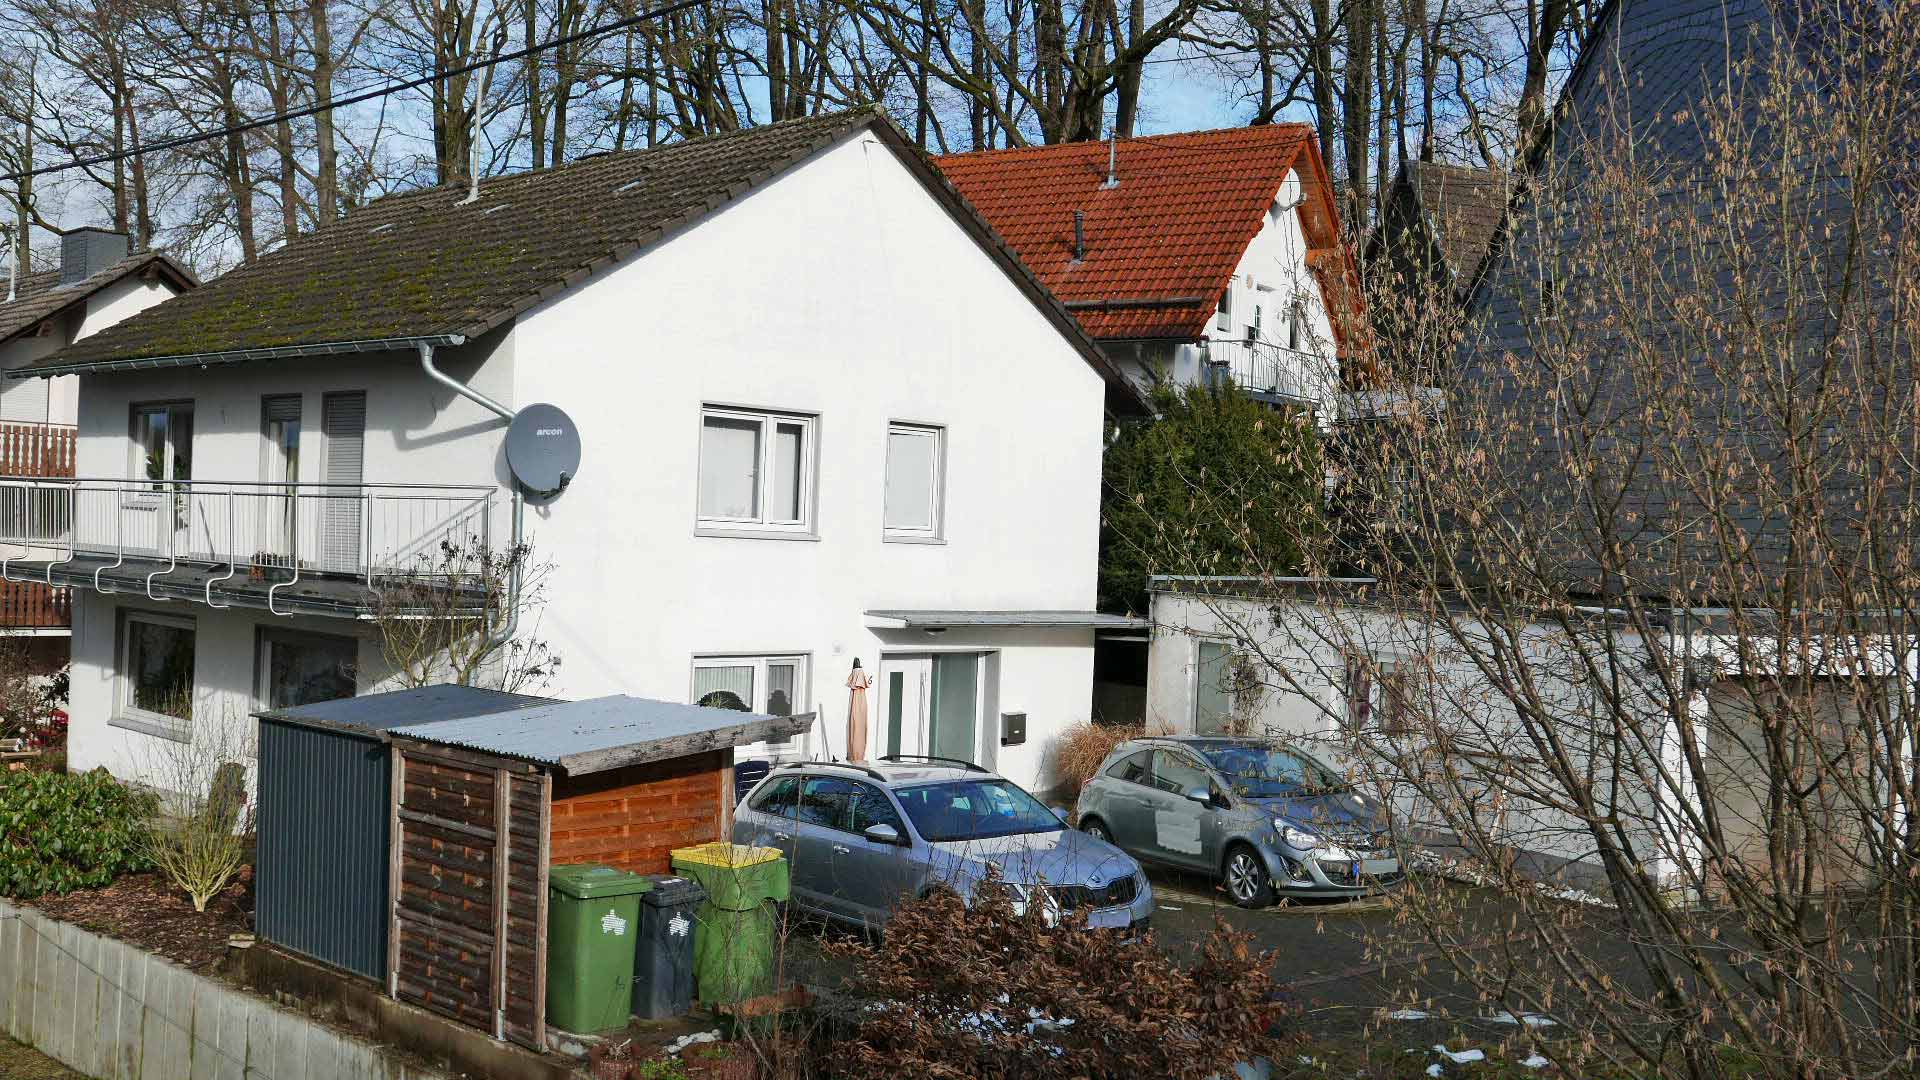 Reichshof-Nosbach: Familien-/ und rollstuhlgerechtes renoviertes Wohnhaus, gepflasterte Hoffläche mit Stellplatz